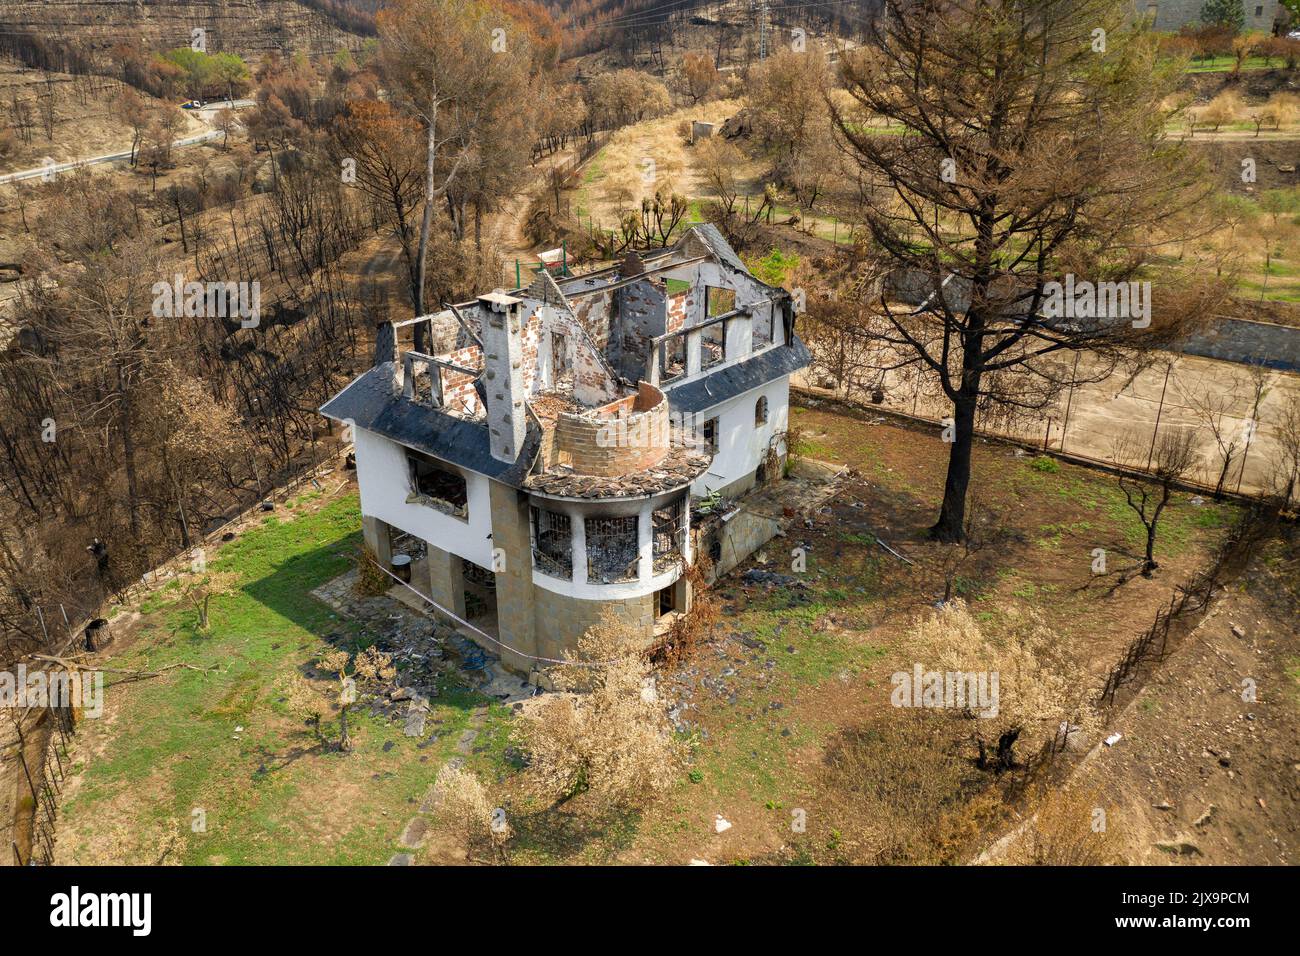 House burned and calcined by the 2022 Pont de Vilomara wildfire (Bages, Barcelona, Catalonia, Spain)  ESP: Casa quemada y calcinada por un incendio Stock Photo